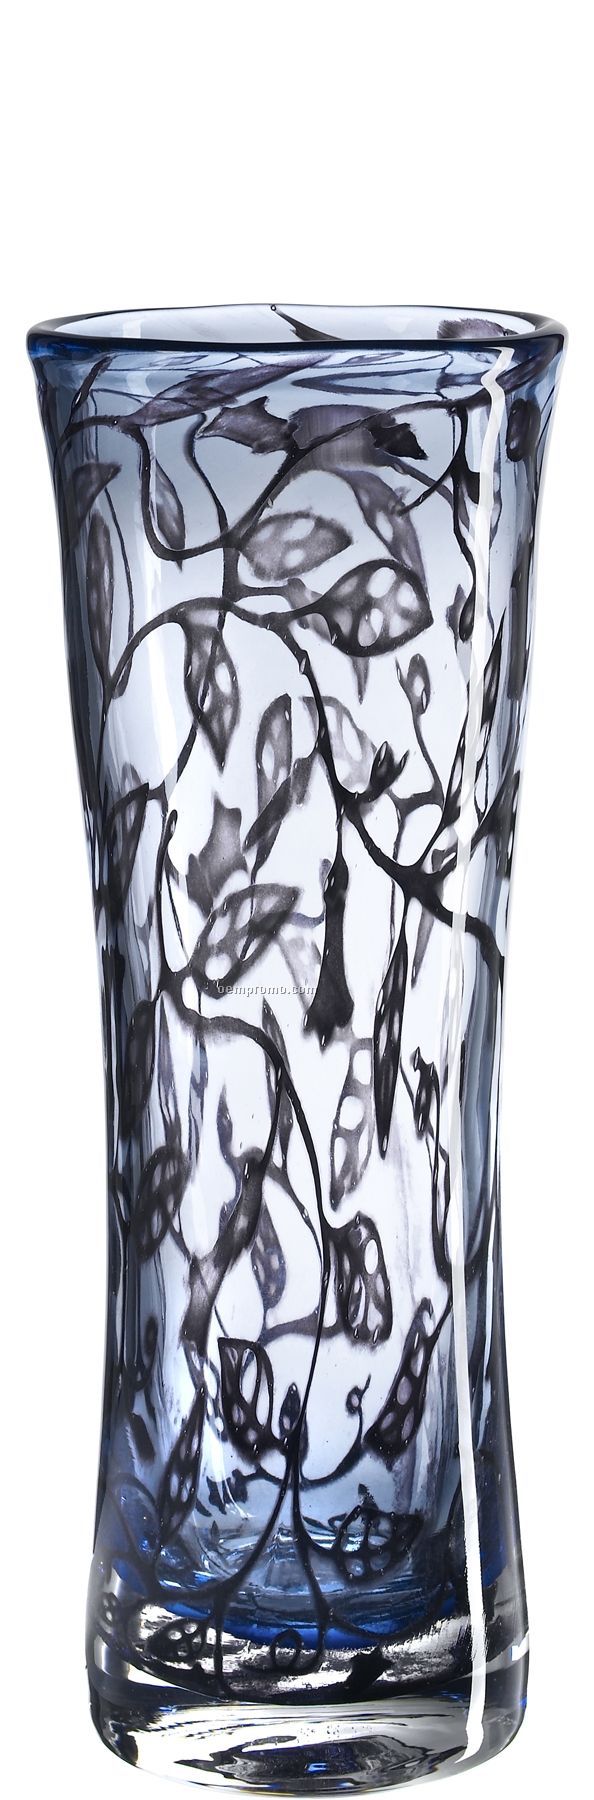 Arabesque Vase By Olle Bronzen